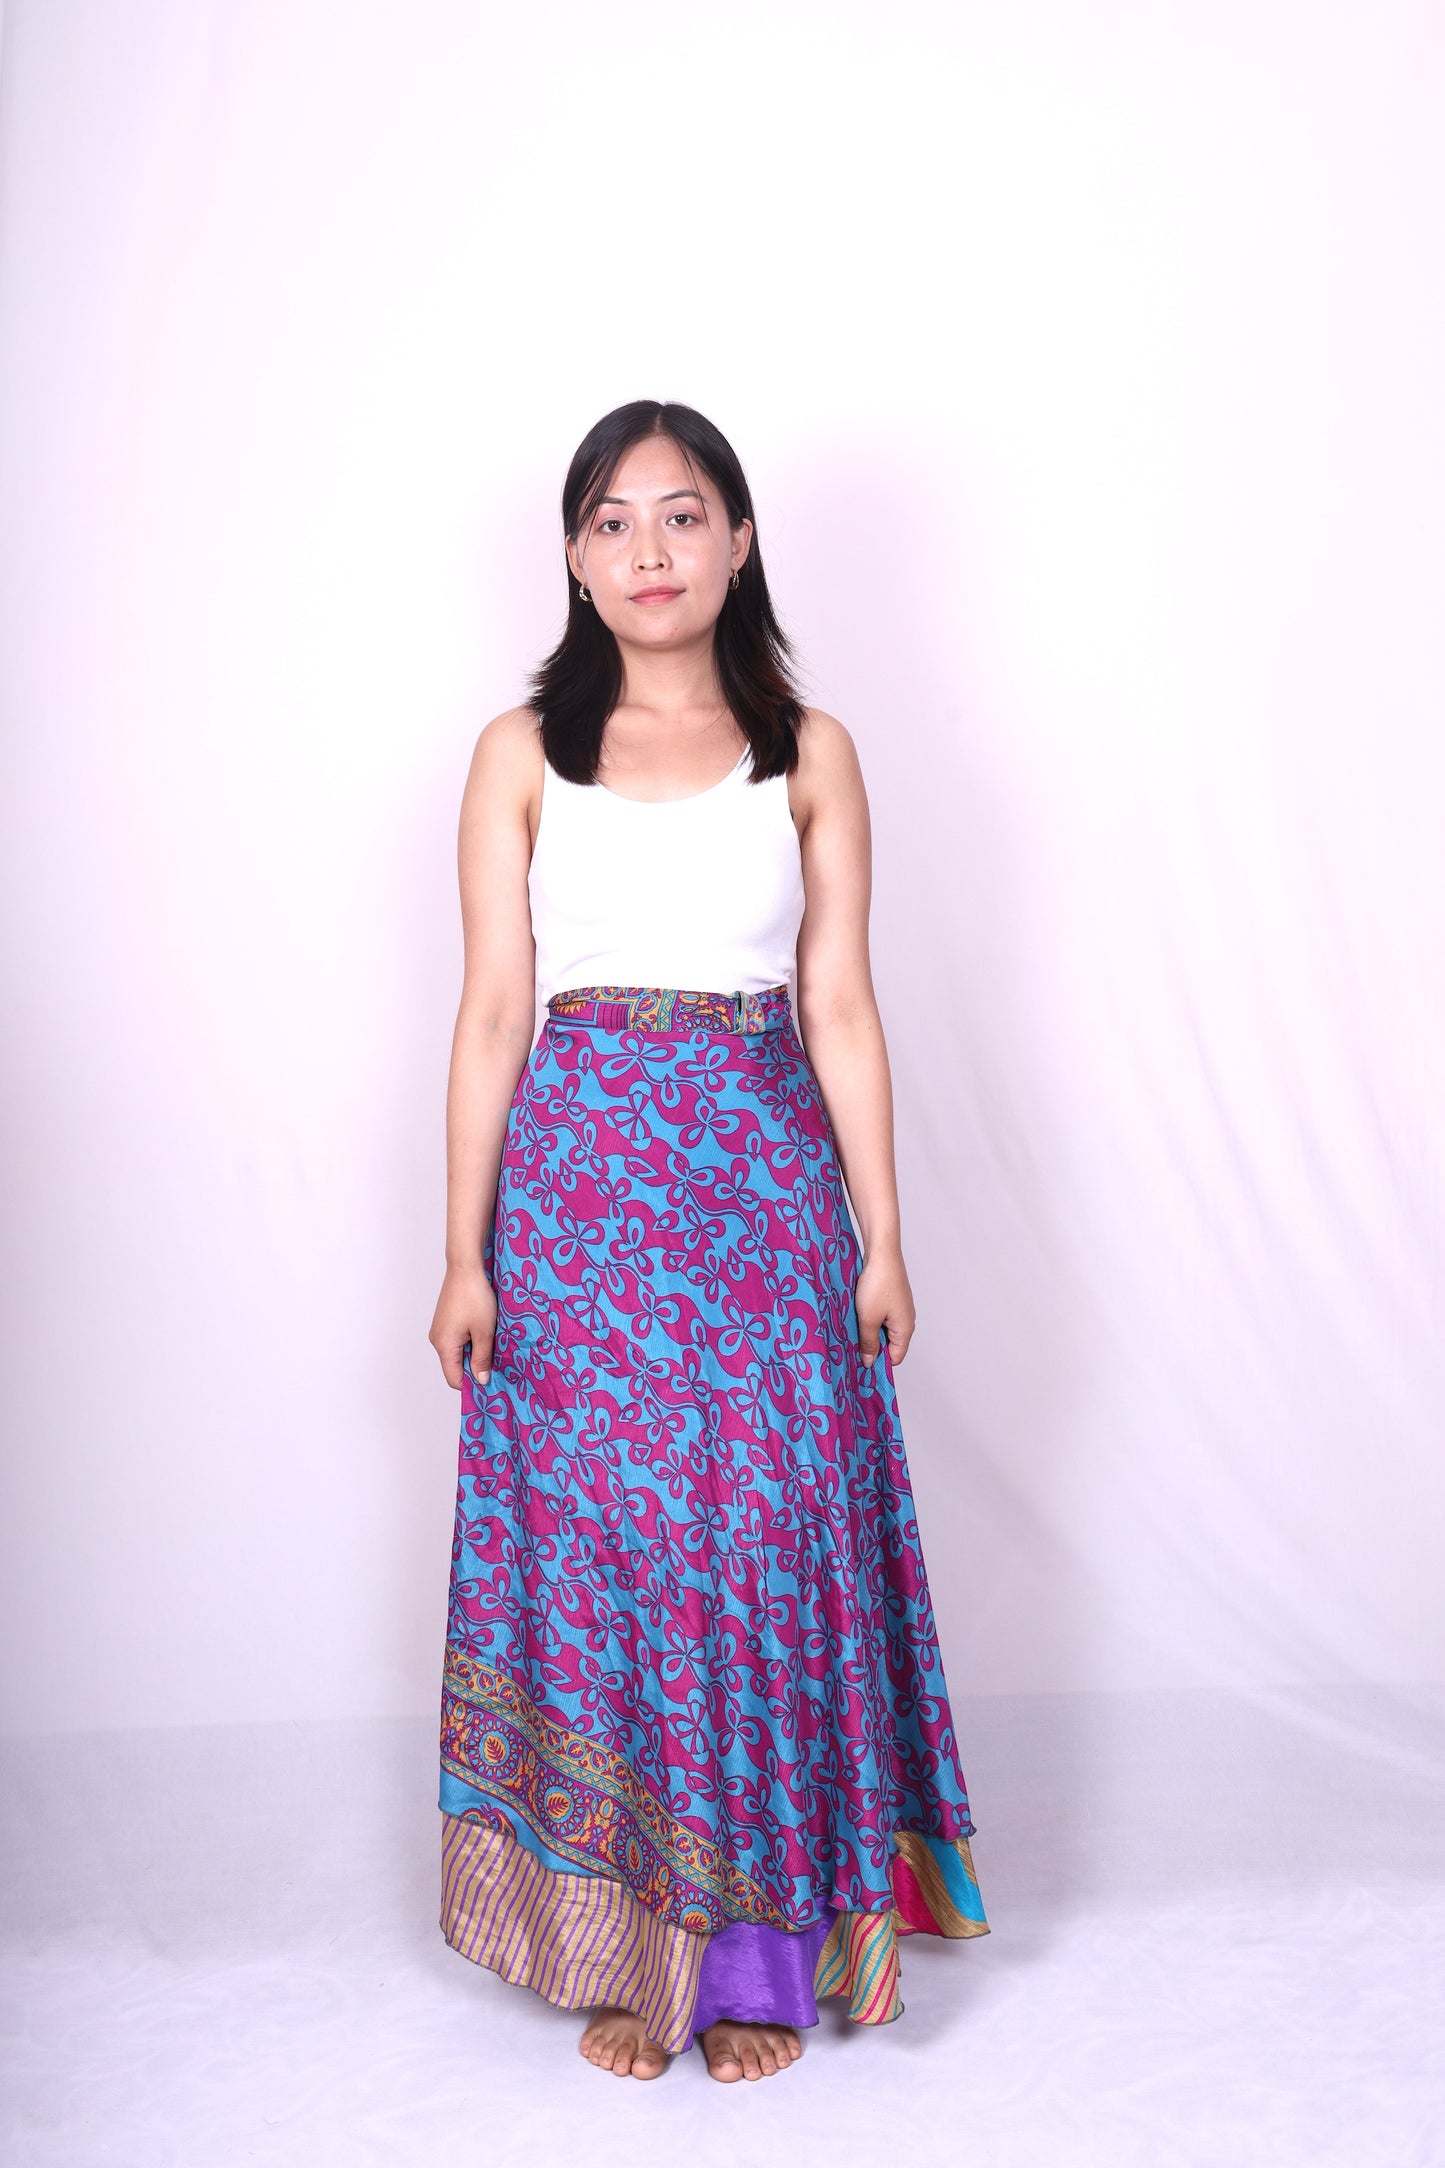 Sari Ankle-length Wrap Skirt